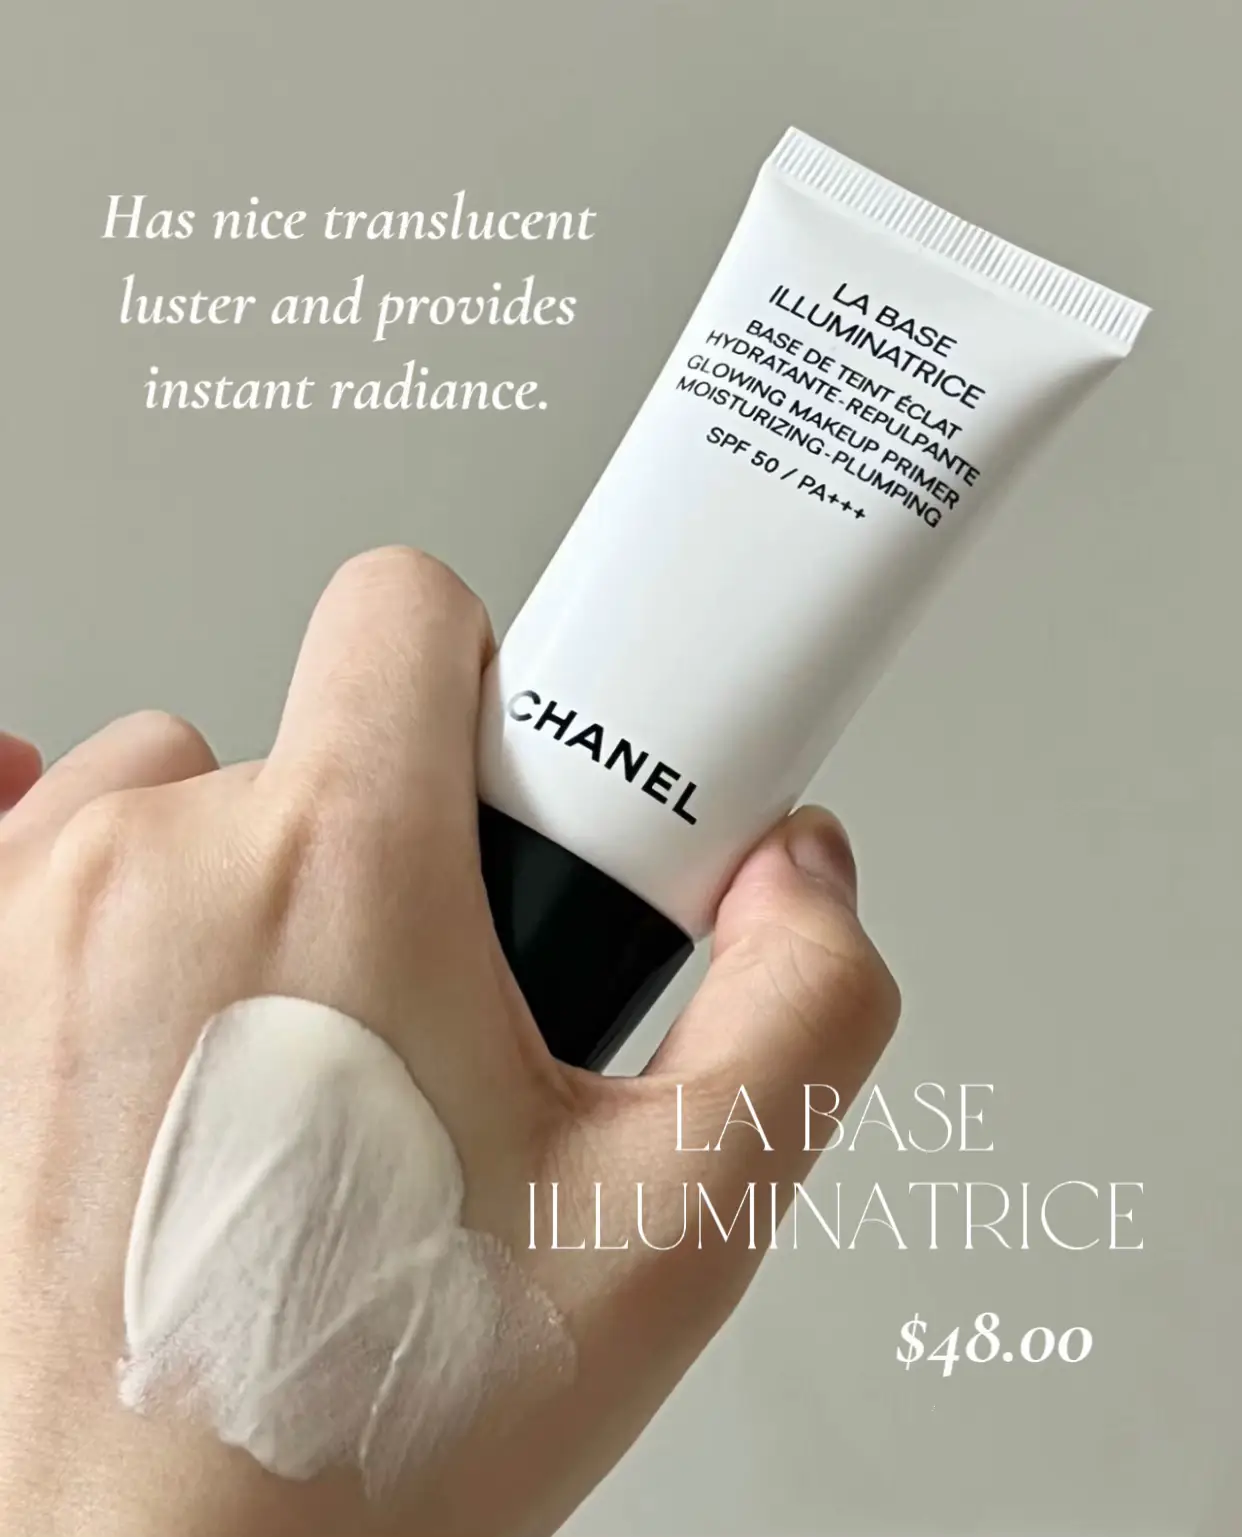 Chanel La Base Illuminatrice Glowing Make-up Primer Moisturising-plumping